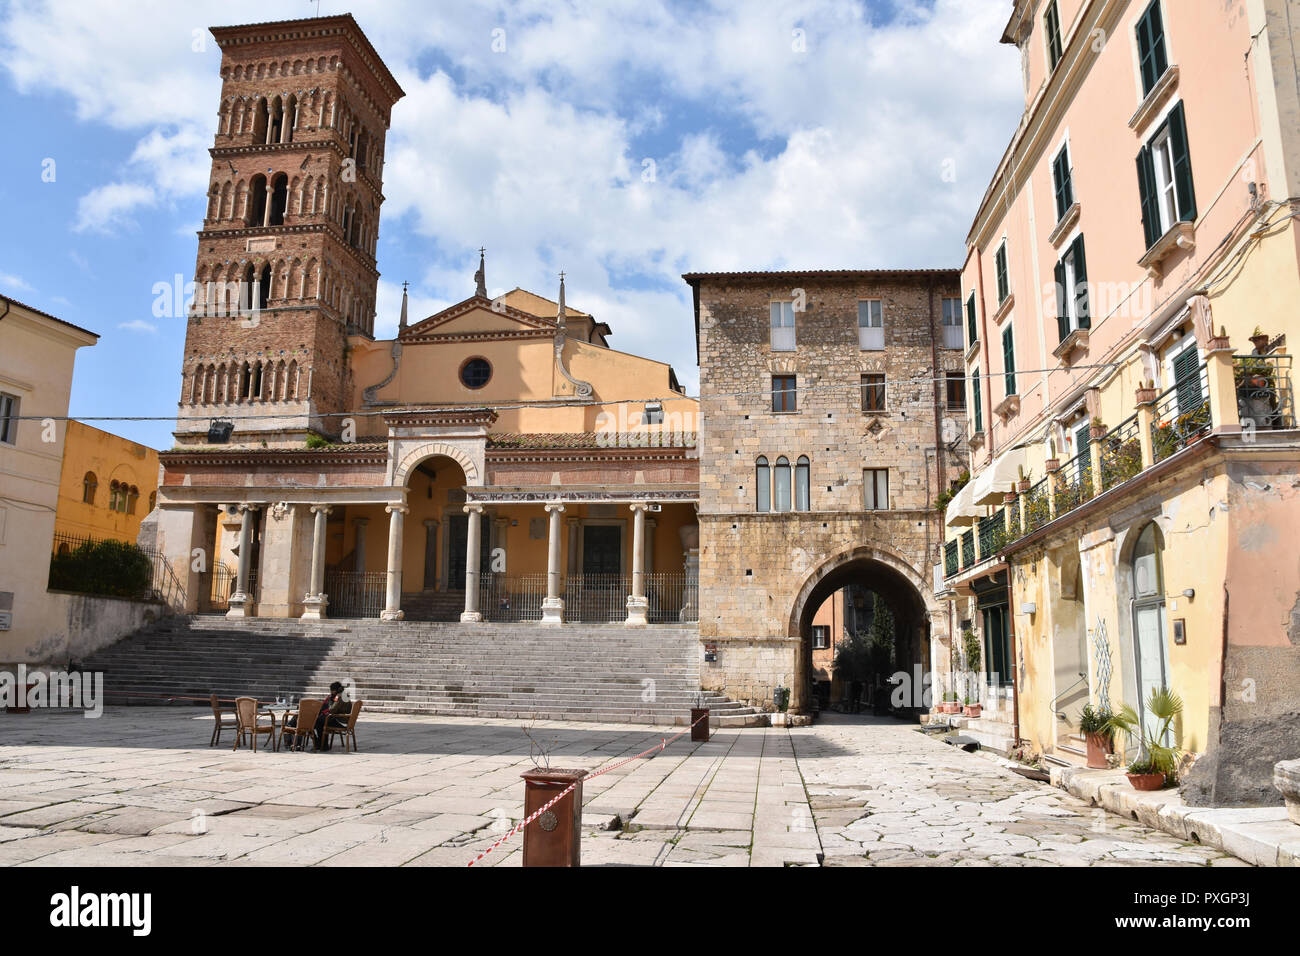 La piccola città del centro Italia sono ricchi di storia e tradizioni Foto Stock